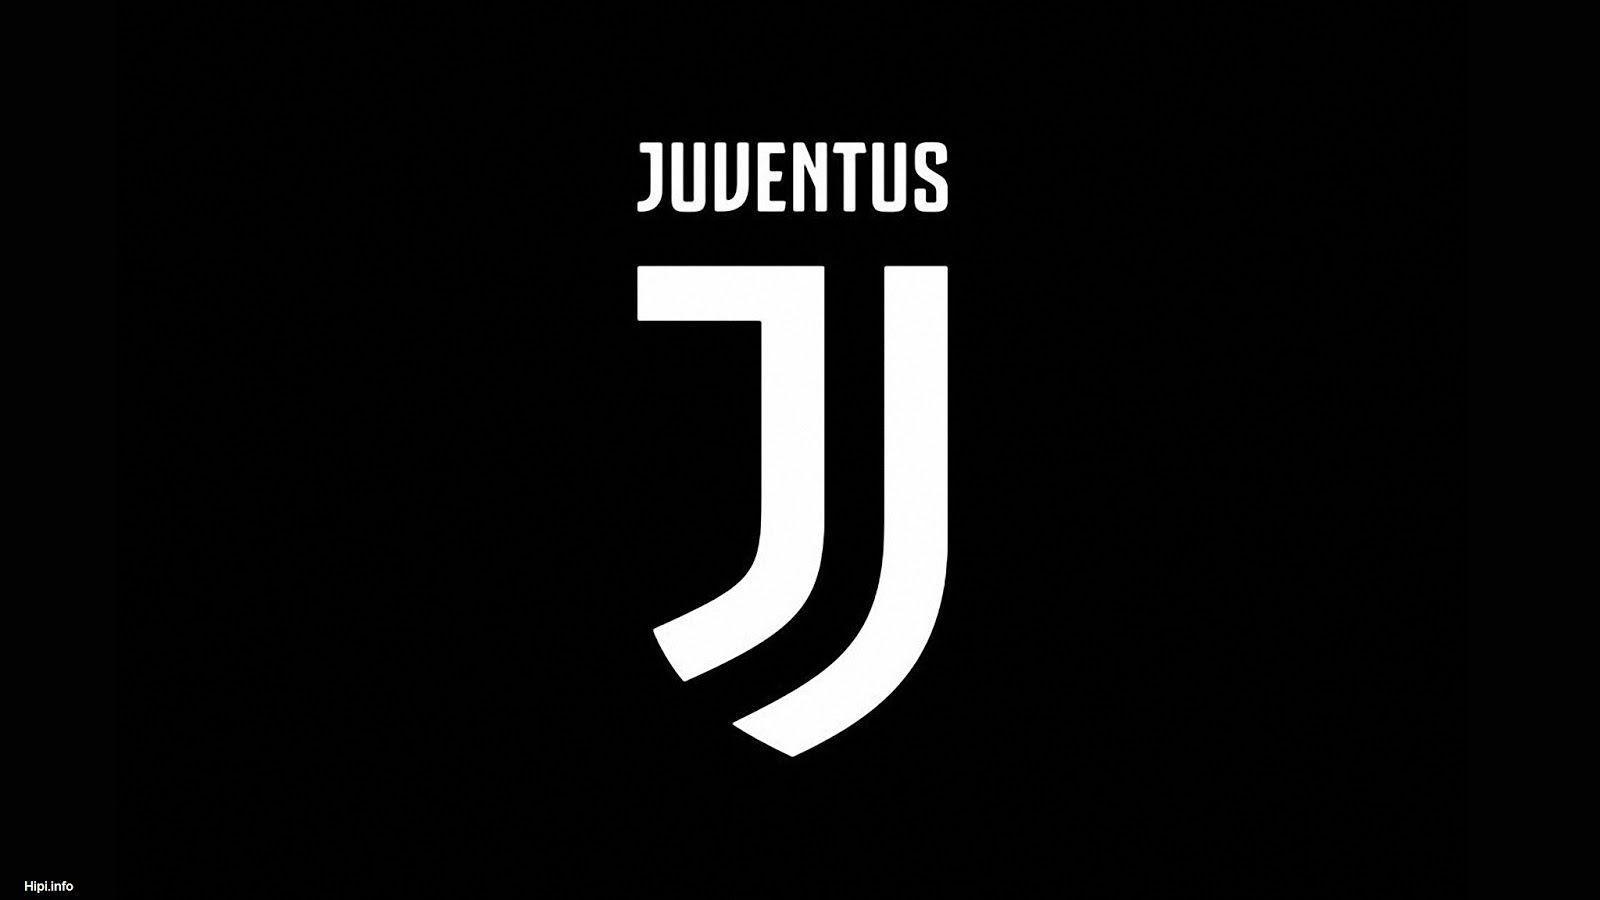 Gambar Juventus Hd - KibrisPDR